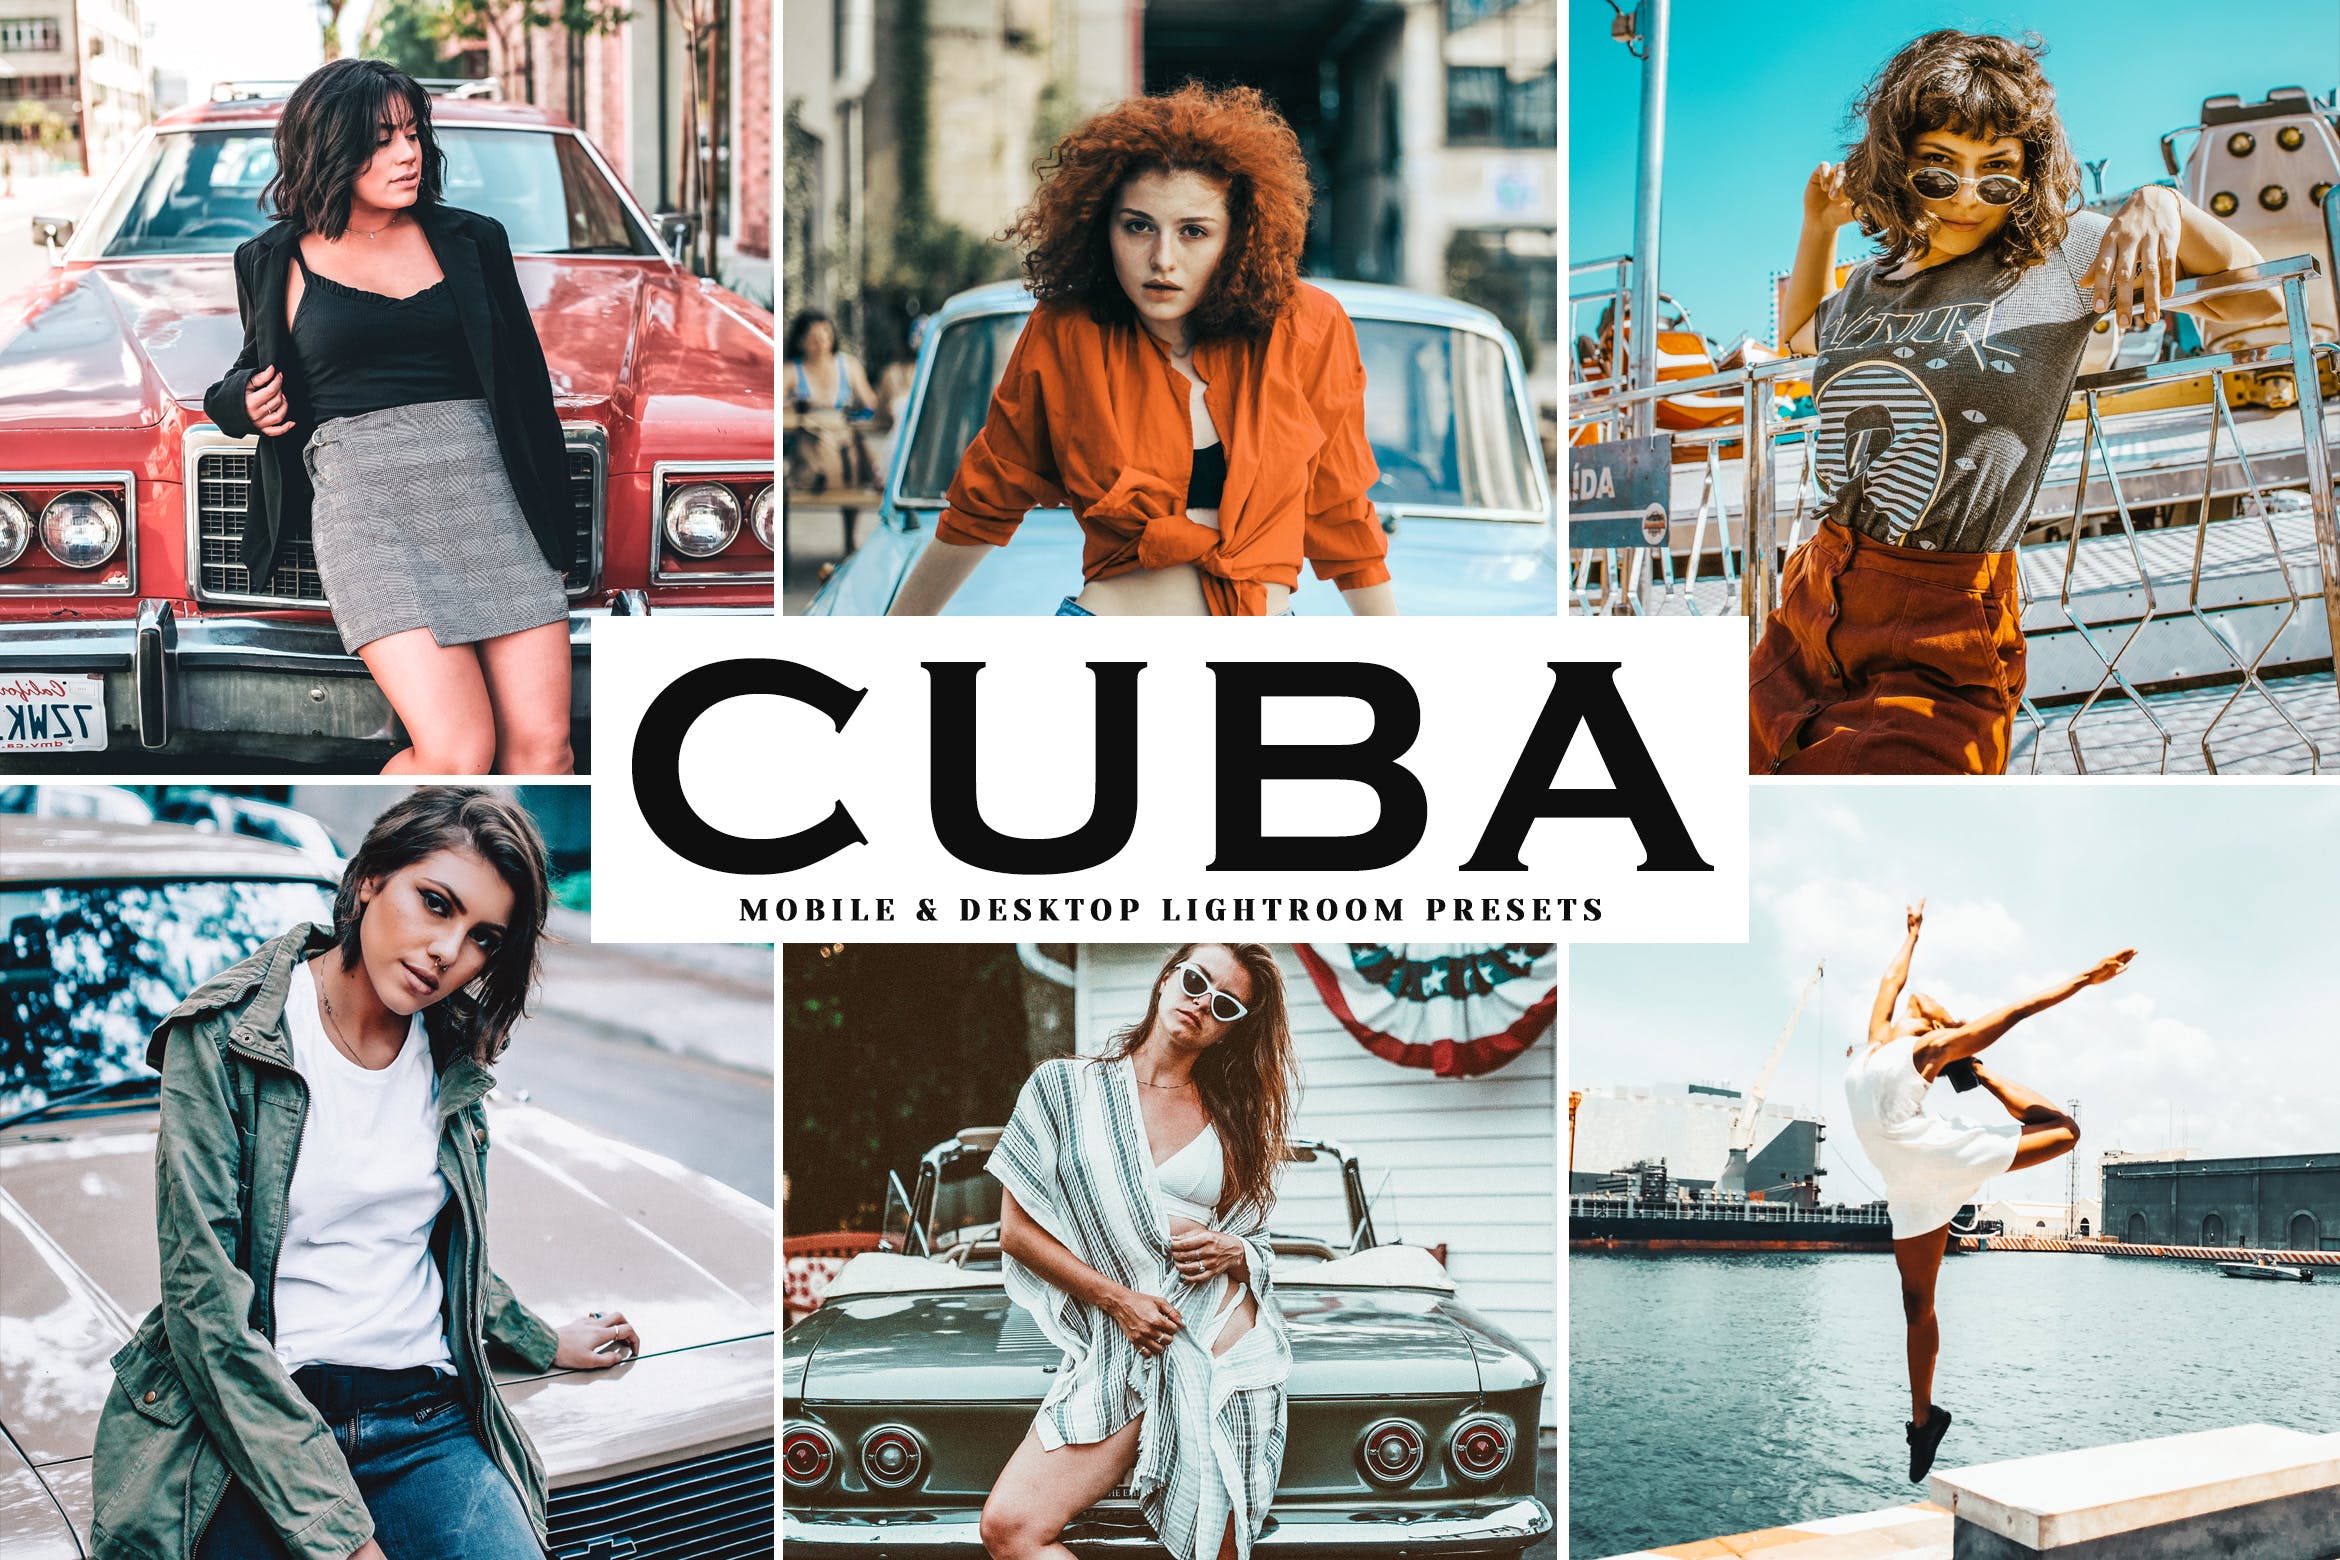 复古风格照片调色滤镜16图库精选LR预设 Cuba Mobile & Desktop Lightroom Presets插图